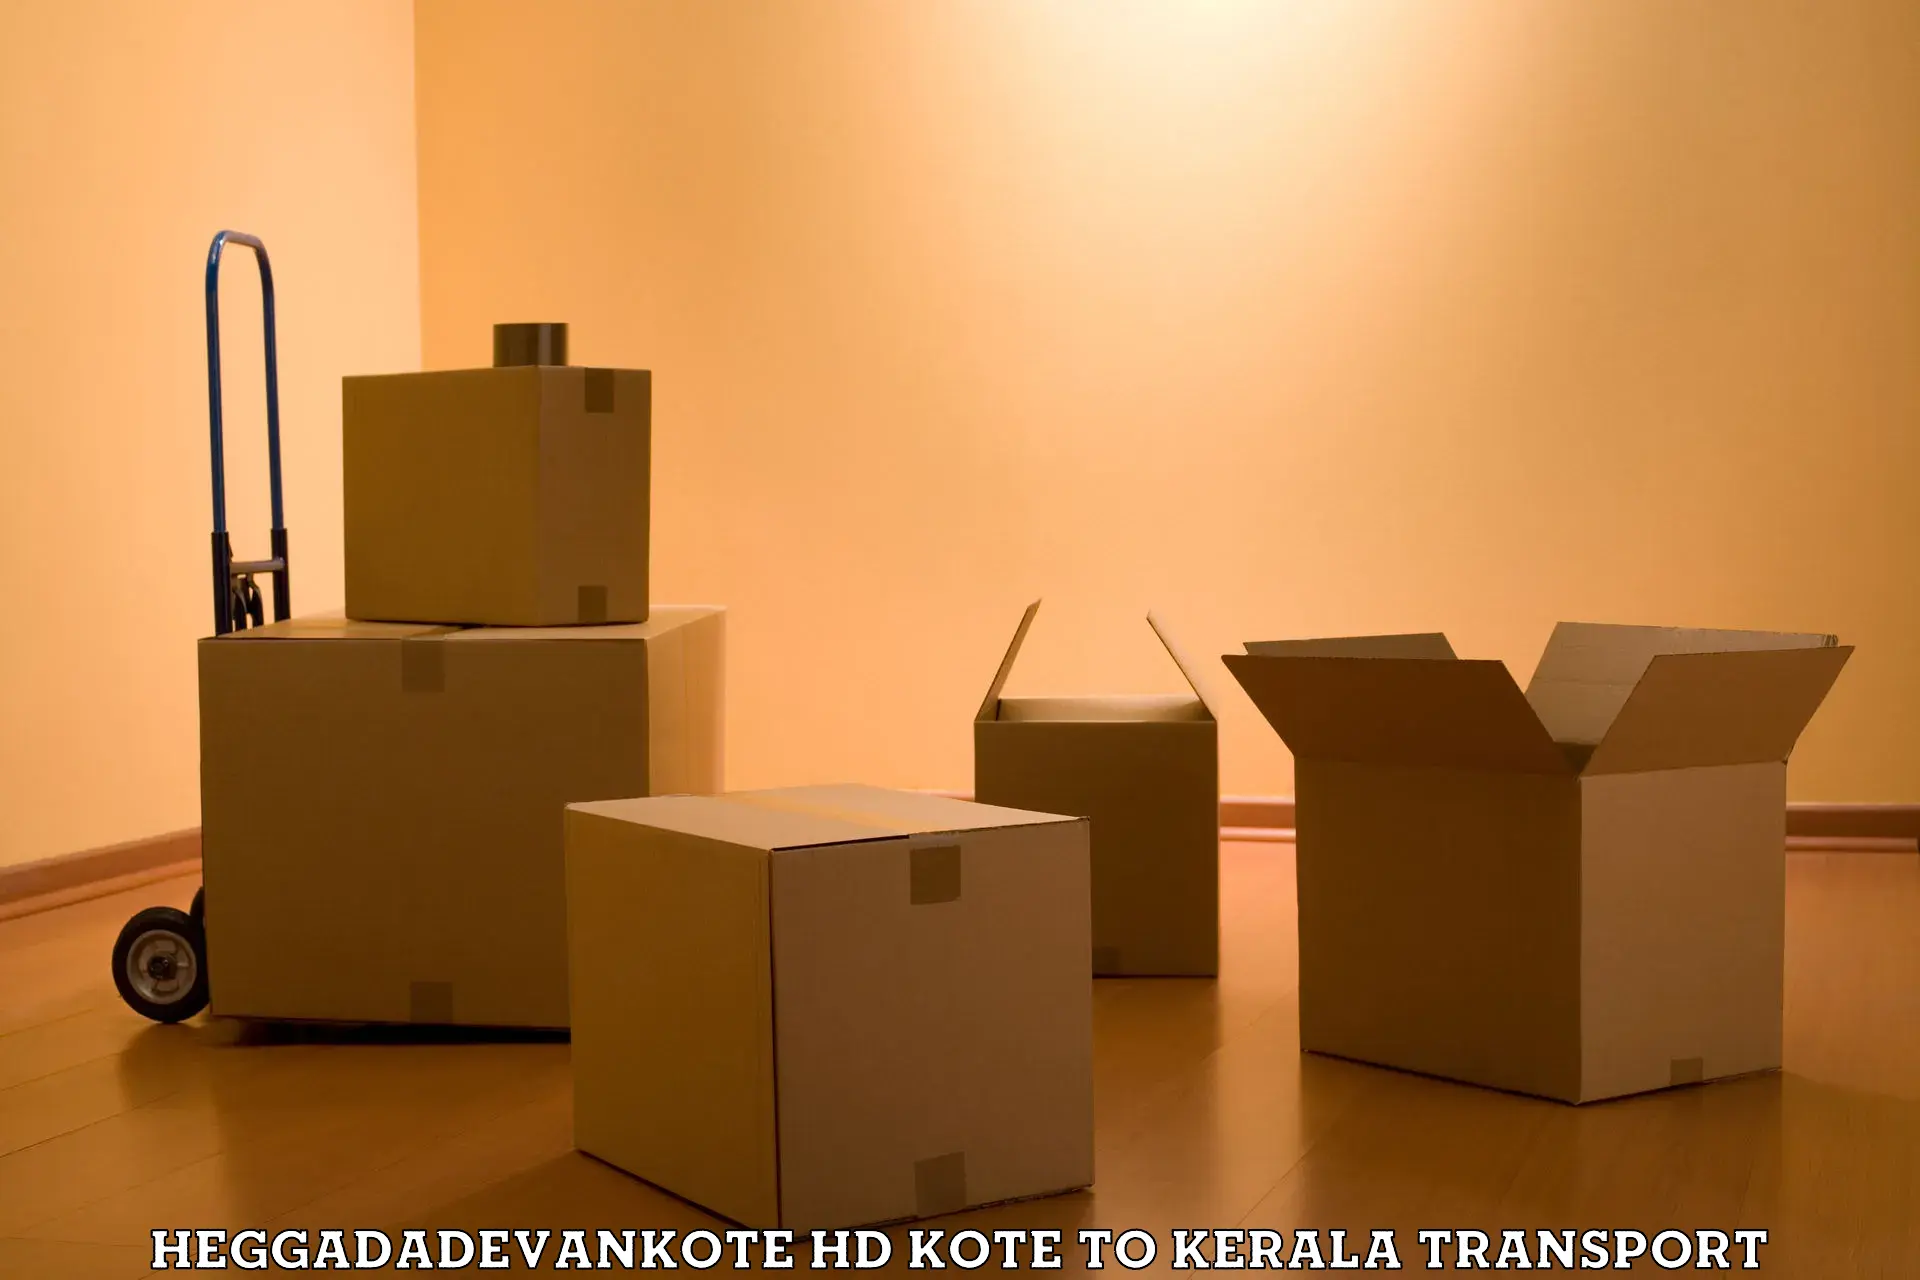 Transport shared services Heggadadevankote HD Kote to Pazhayannur